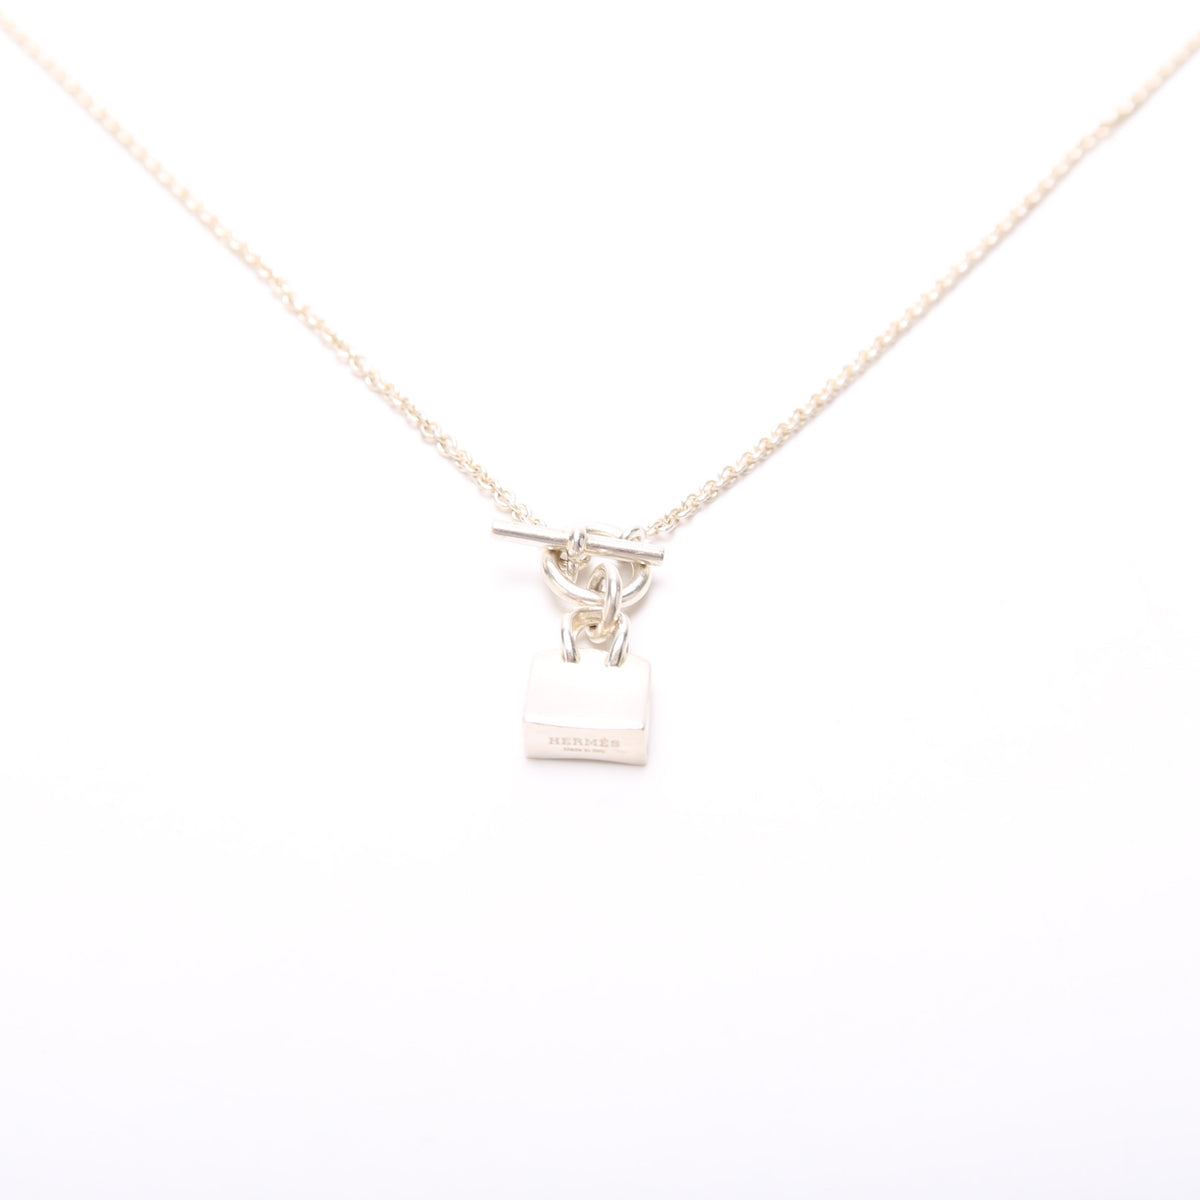 Hermes bag charm necklace